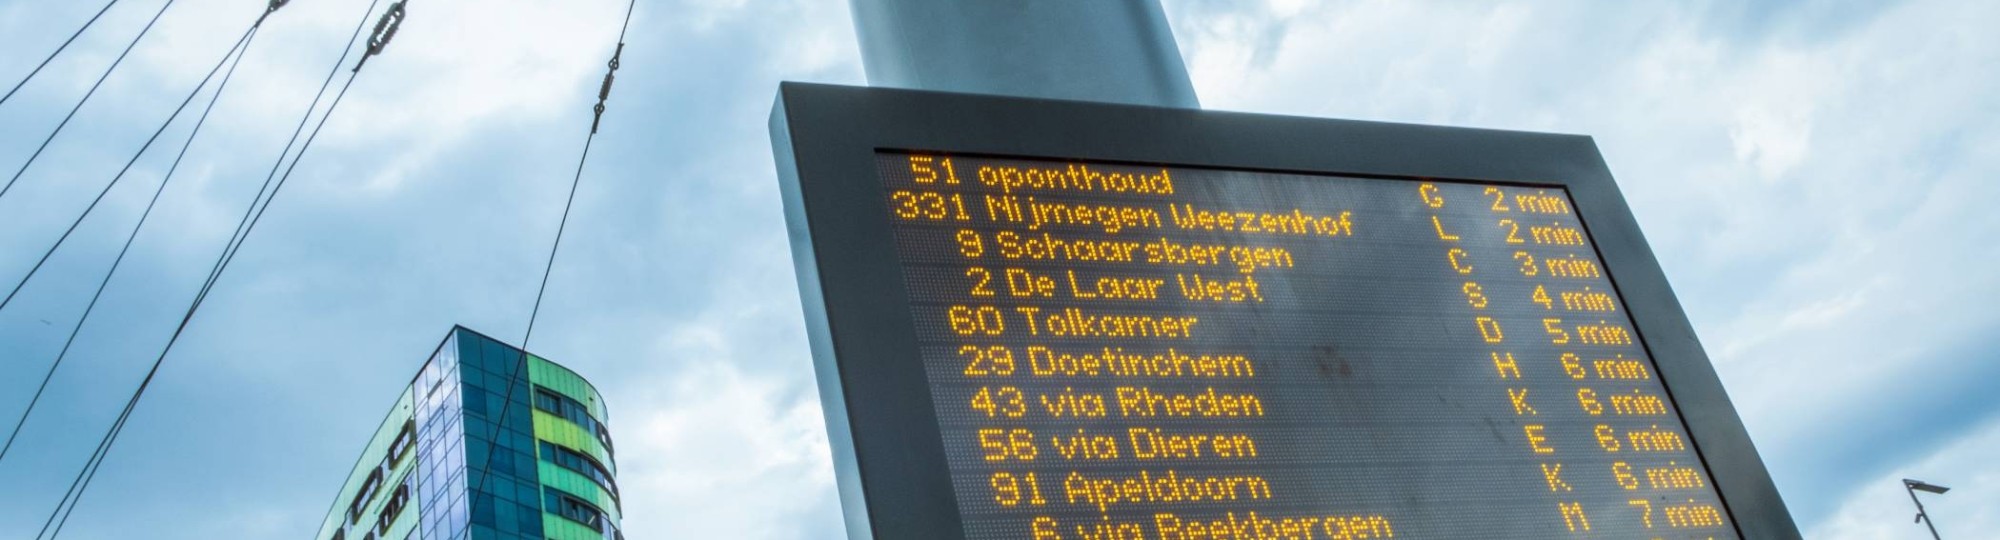 station scherm met bustijden